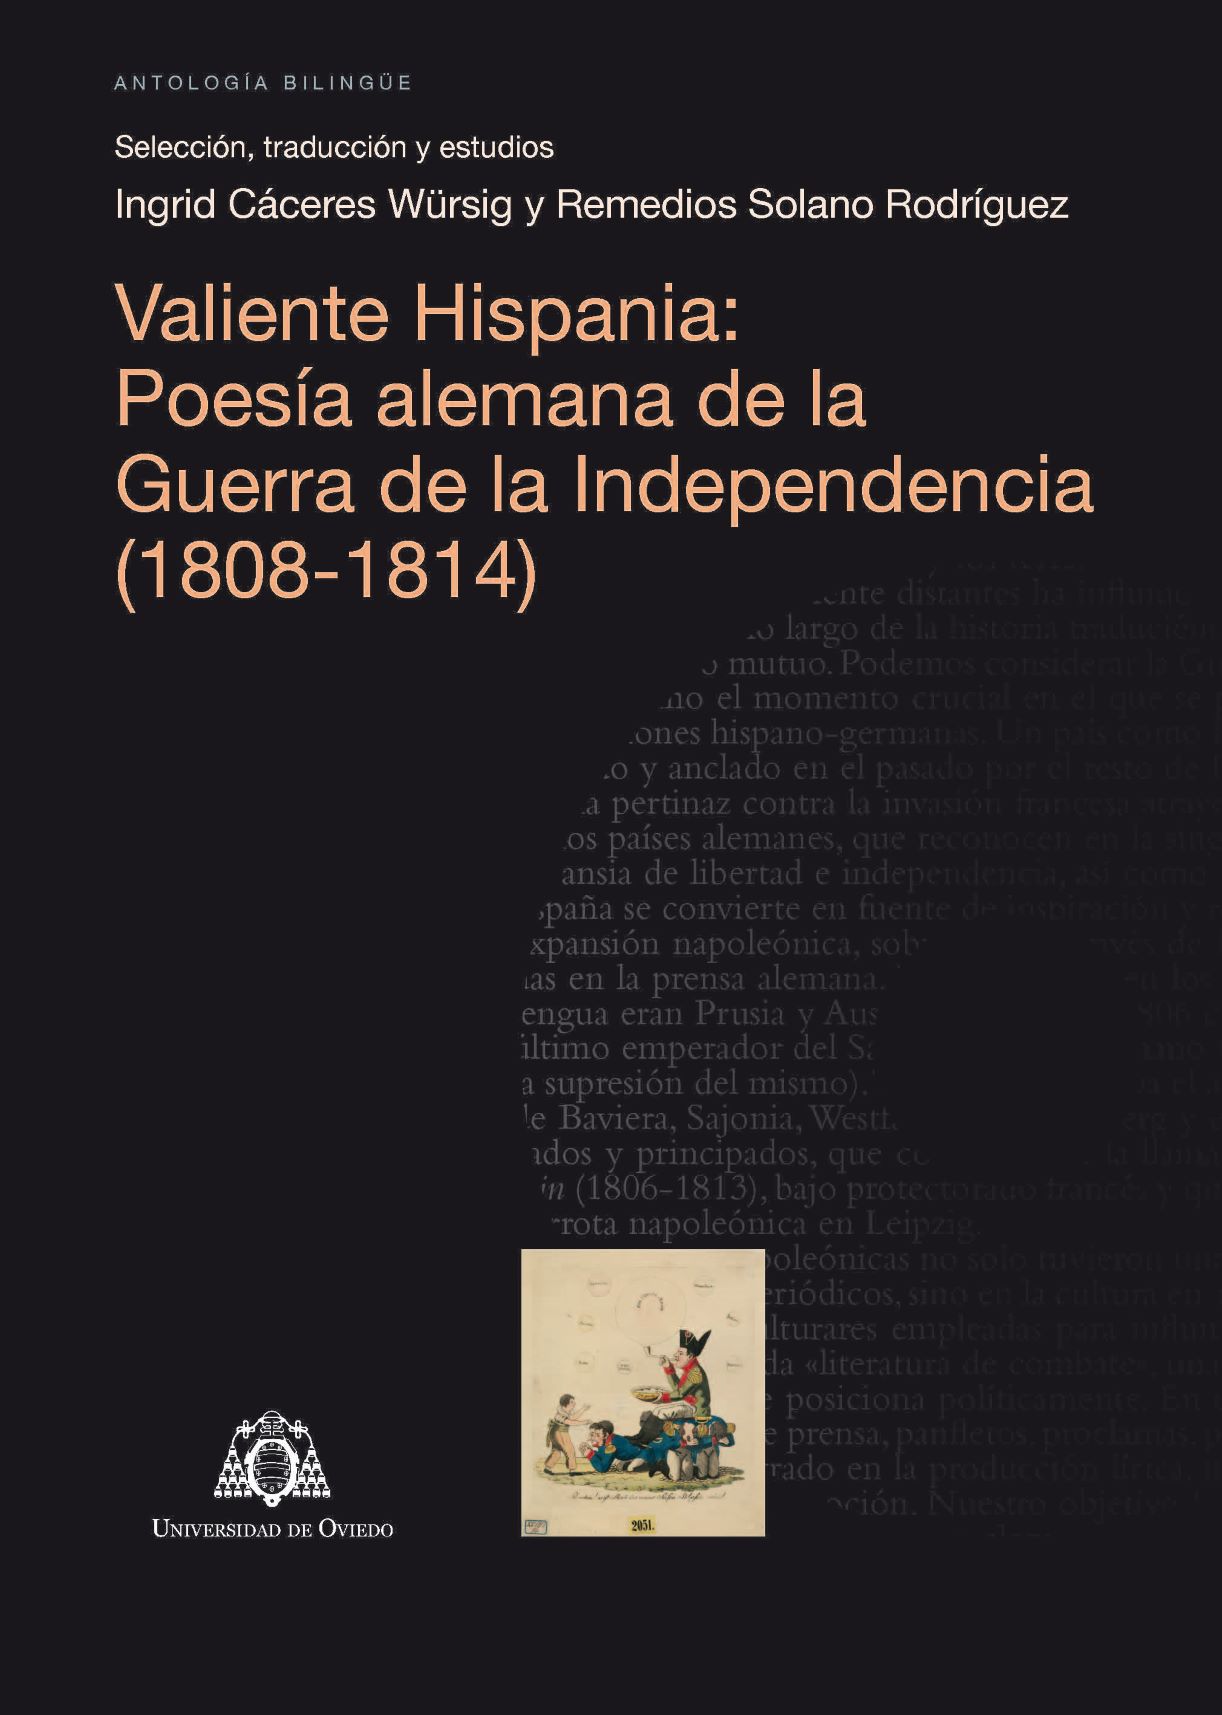 Imagen de portada del libro Valiente Hispania